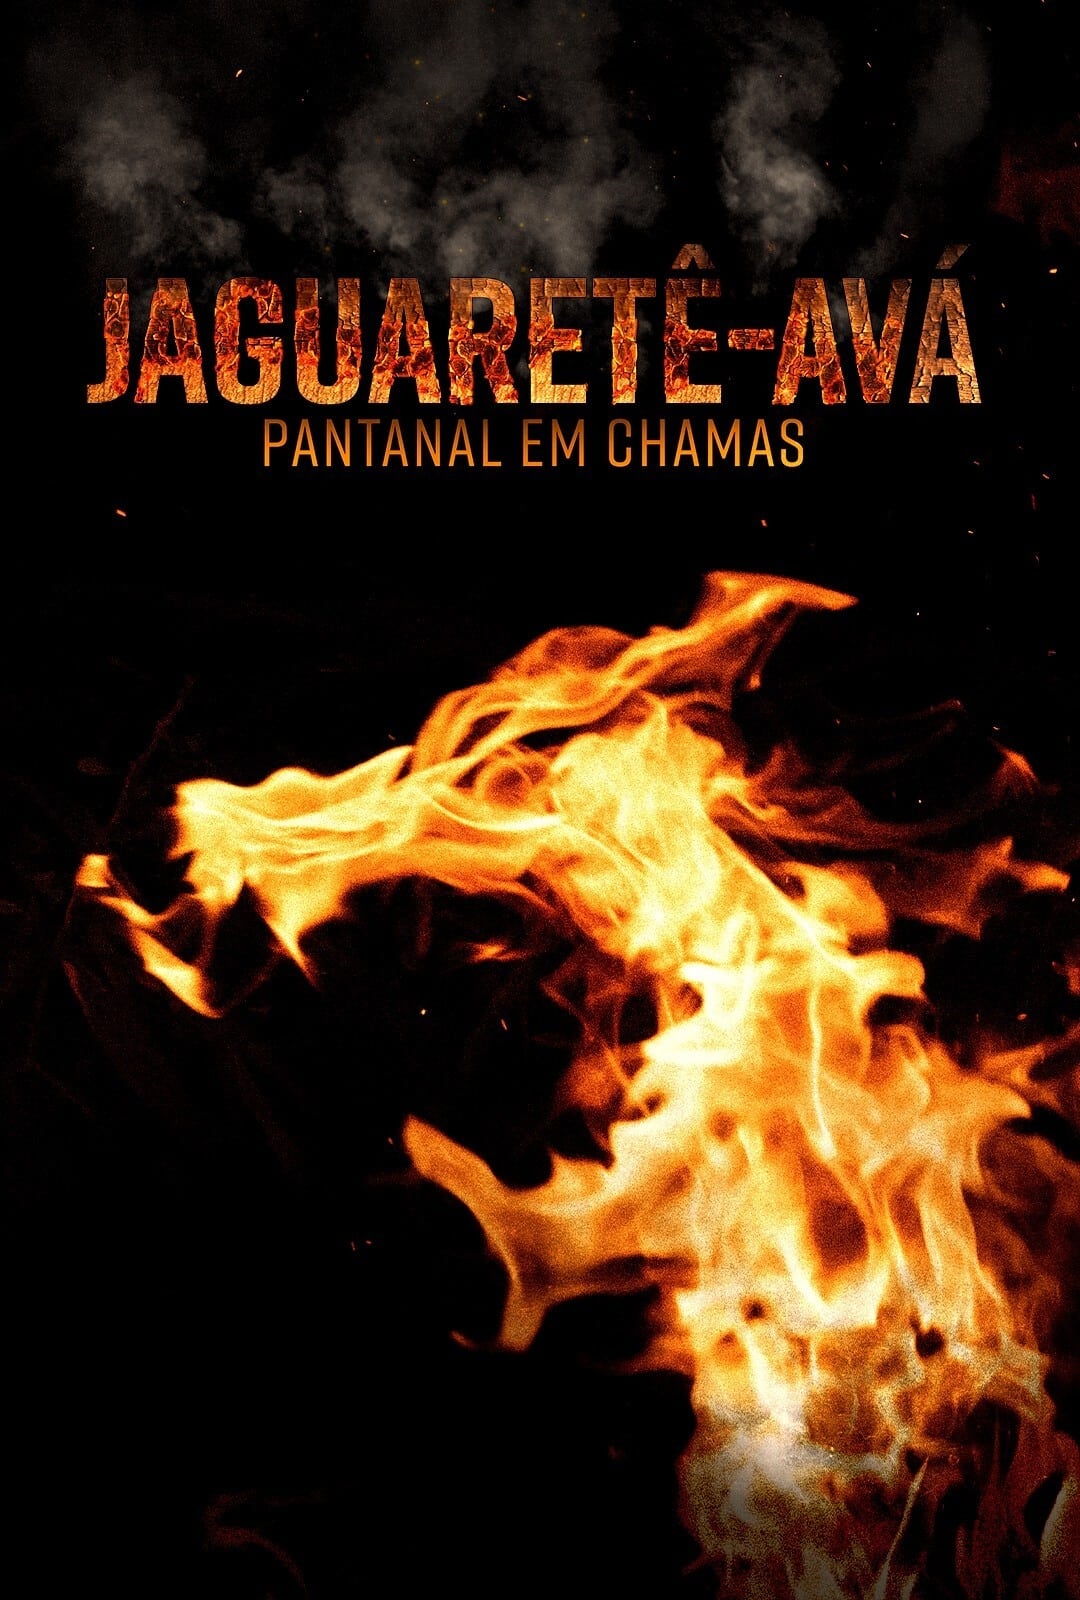 Jaguaretê-Avá: Pantanal em Chamas